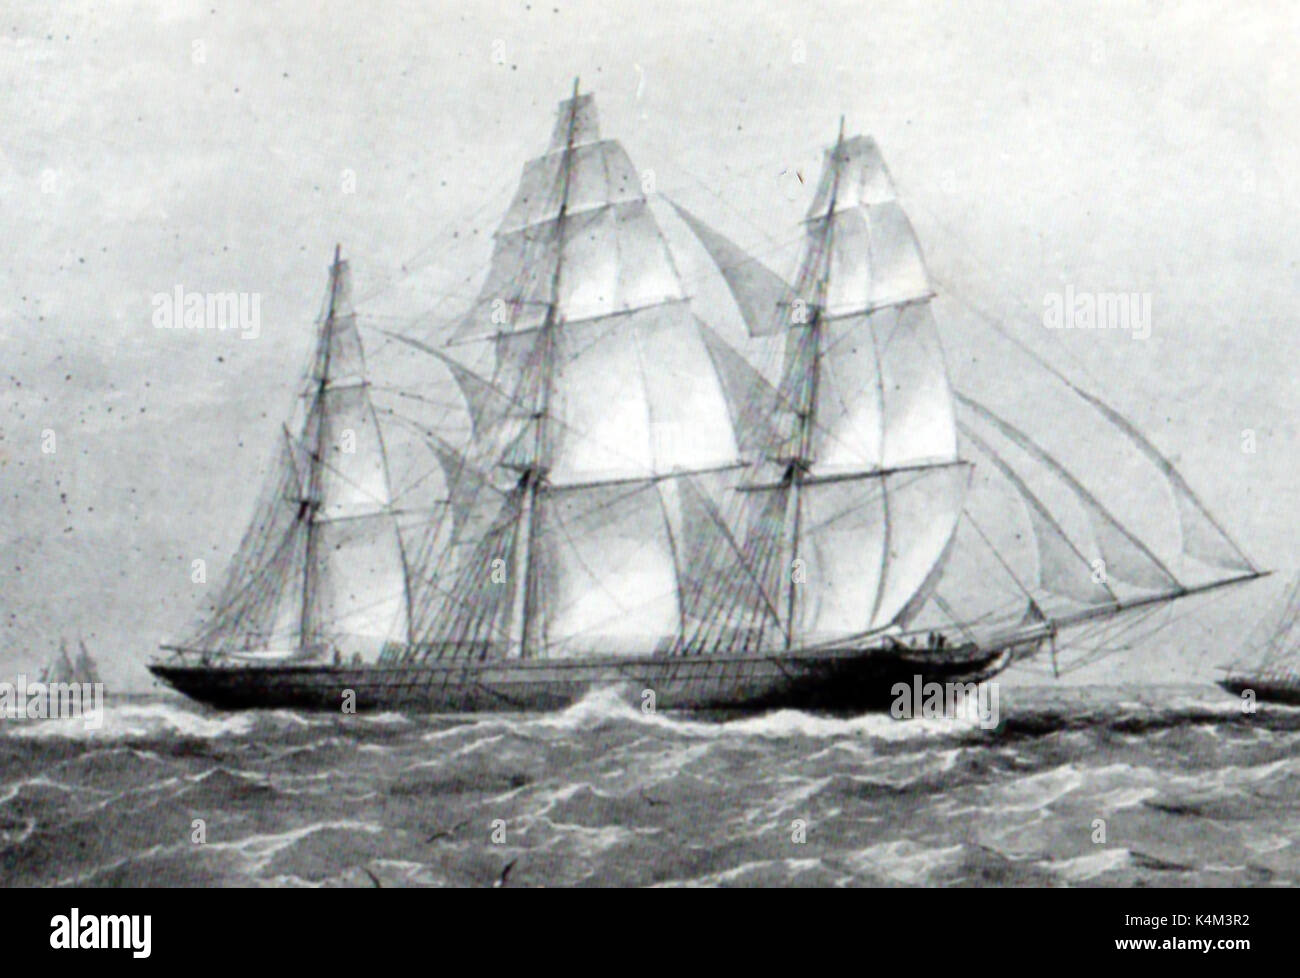 Die Clipper Ship (Windjammer) ARIEL dargestellt in 1866, wenn es wurde Tee. von John Currier gebaut in Newburyport 1846 für N.L. & G. Griswold - Statt der Kanton nach New York record von 90 Tagen. Stockfoto